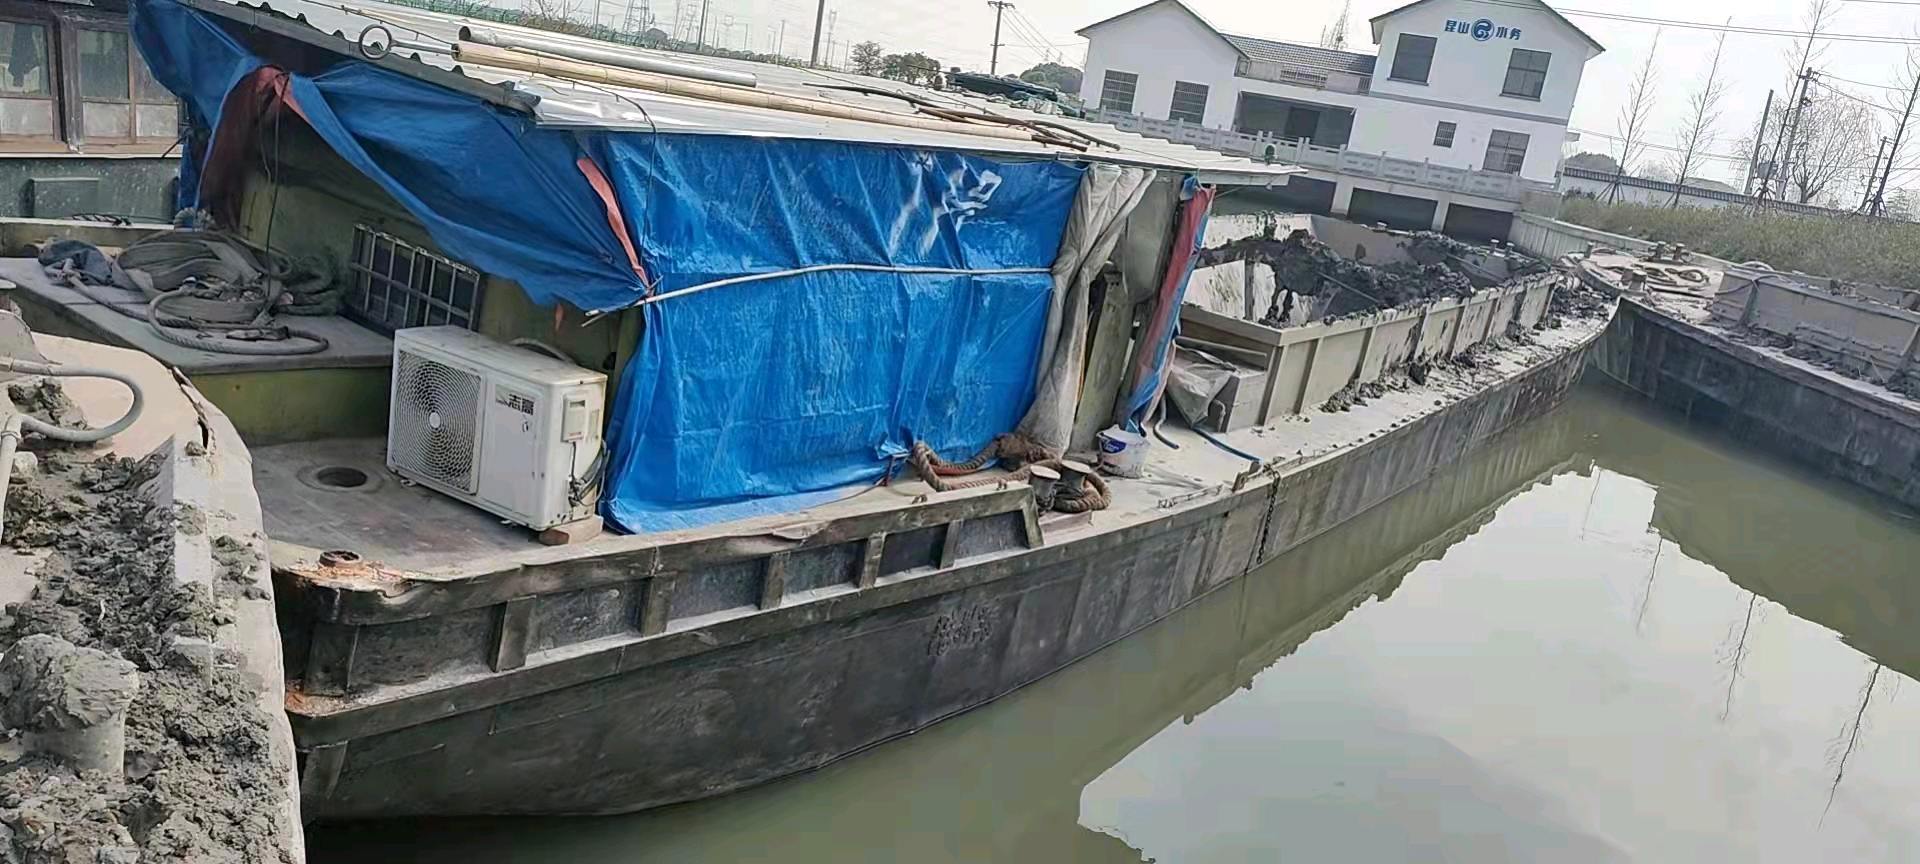 两条50圆开底泥驳船出卖 江苏 缓州市-2.jpg